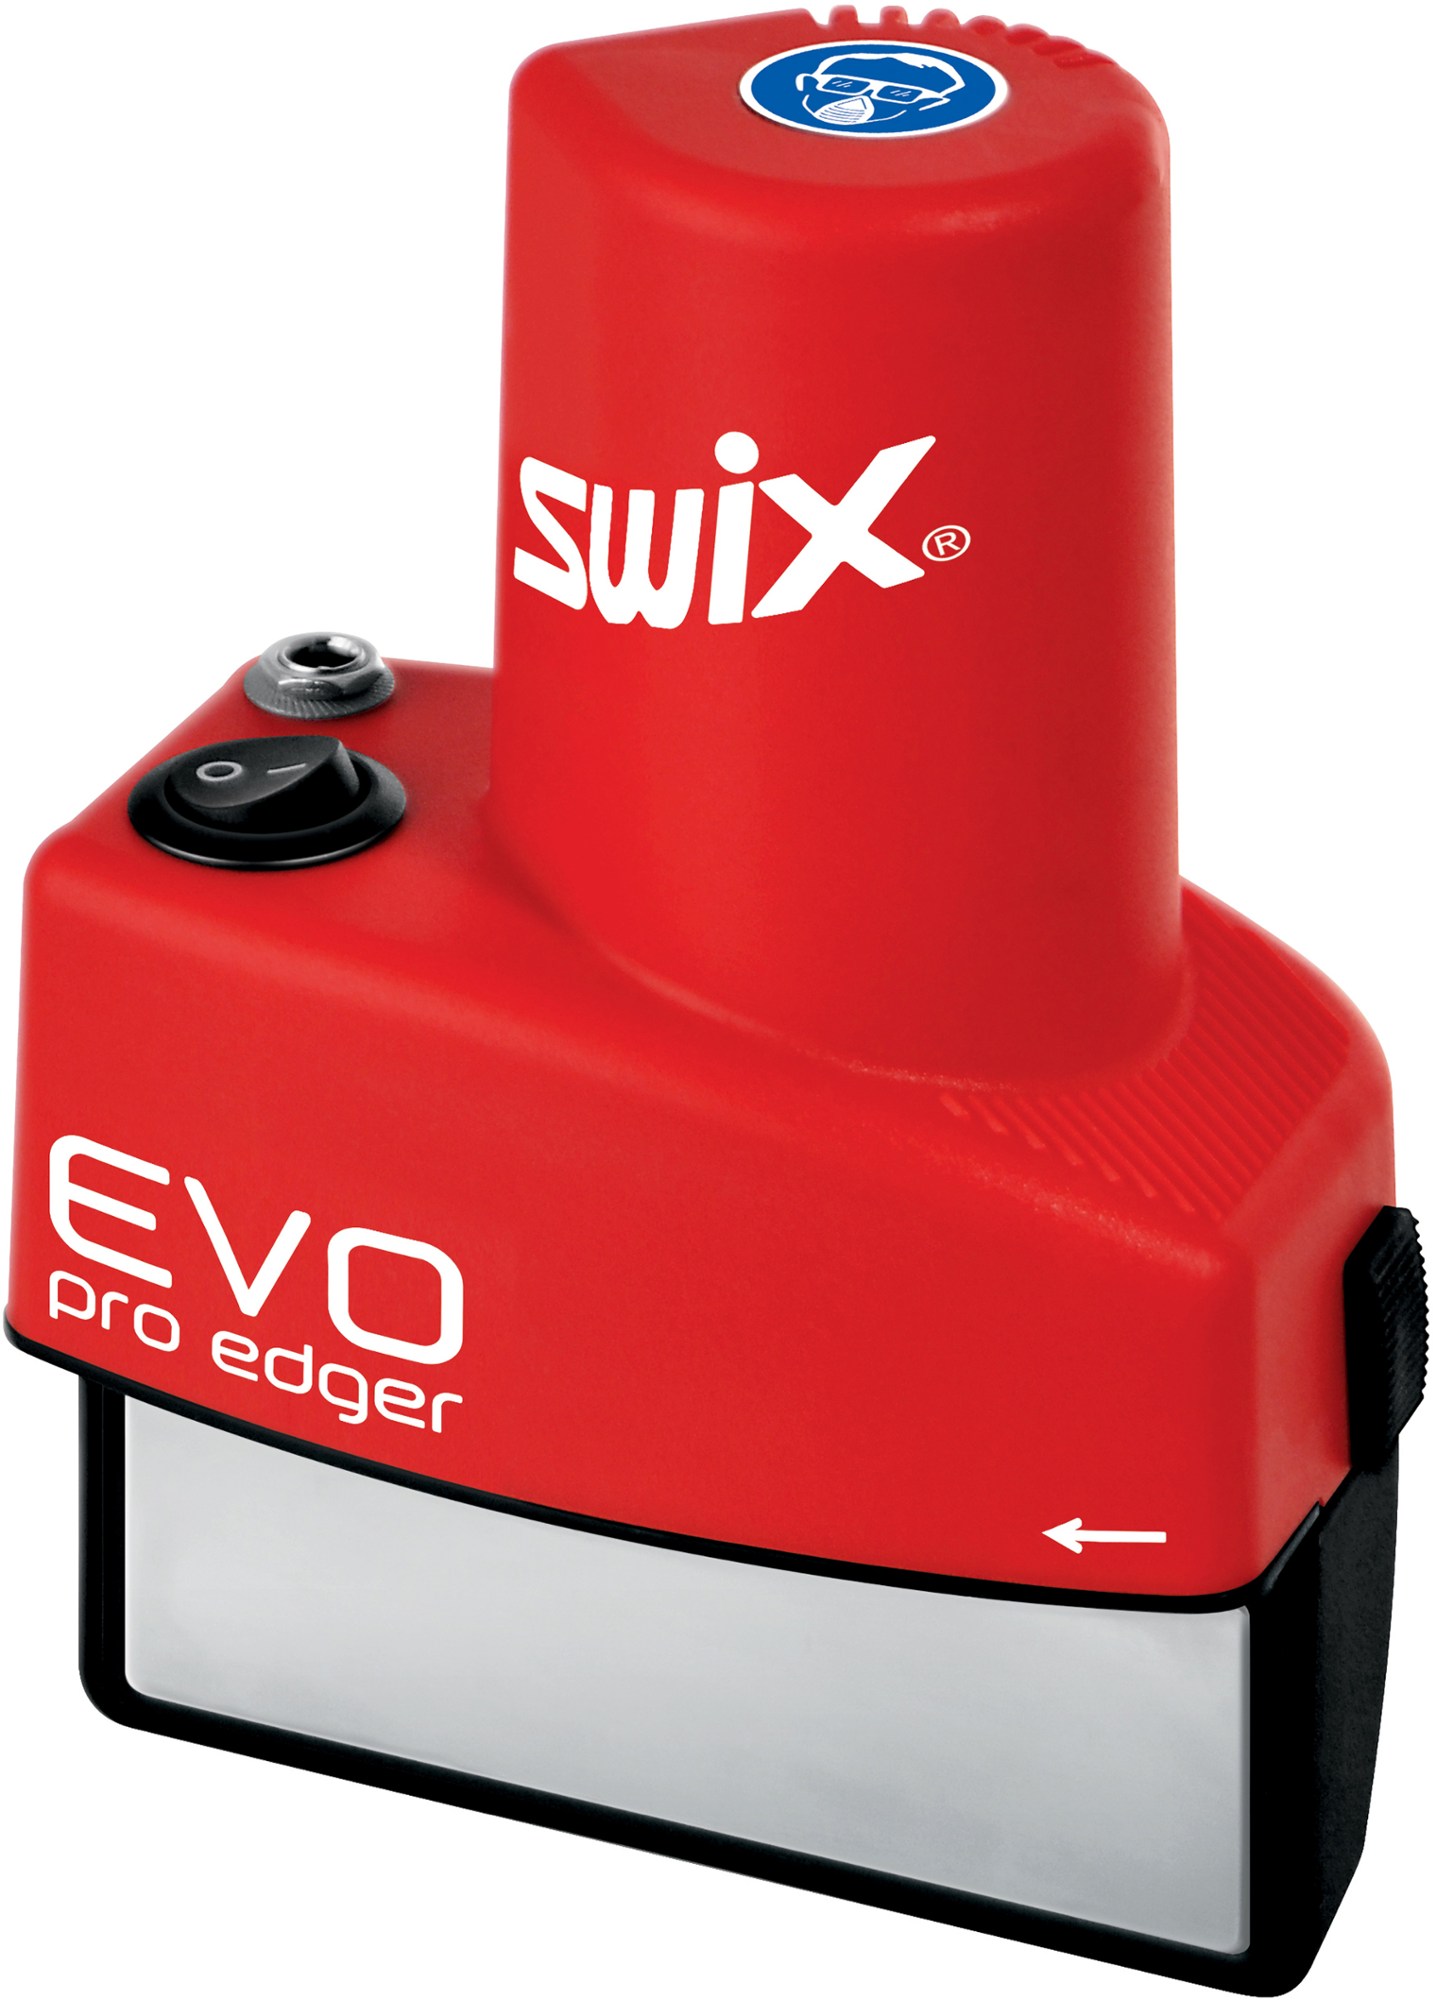 Тюнер для лыж/сноуборда Evo Pro Edger Swix, красный